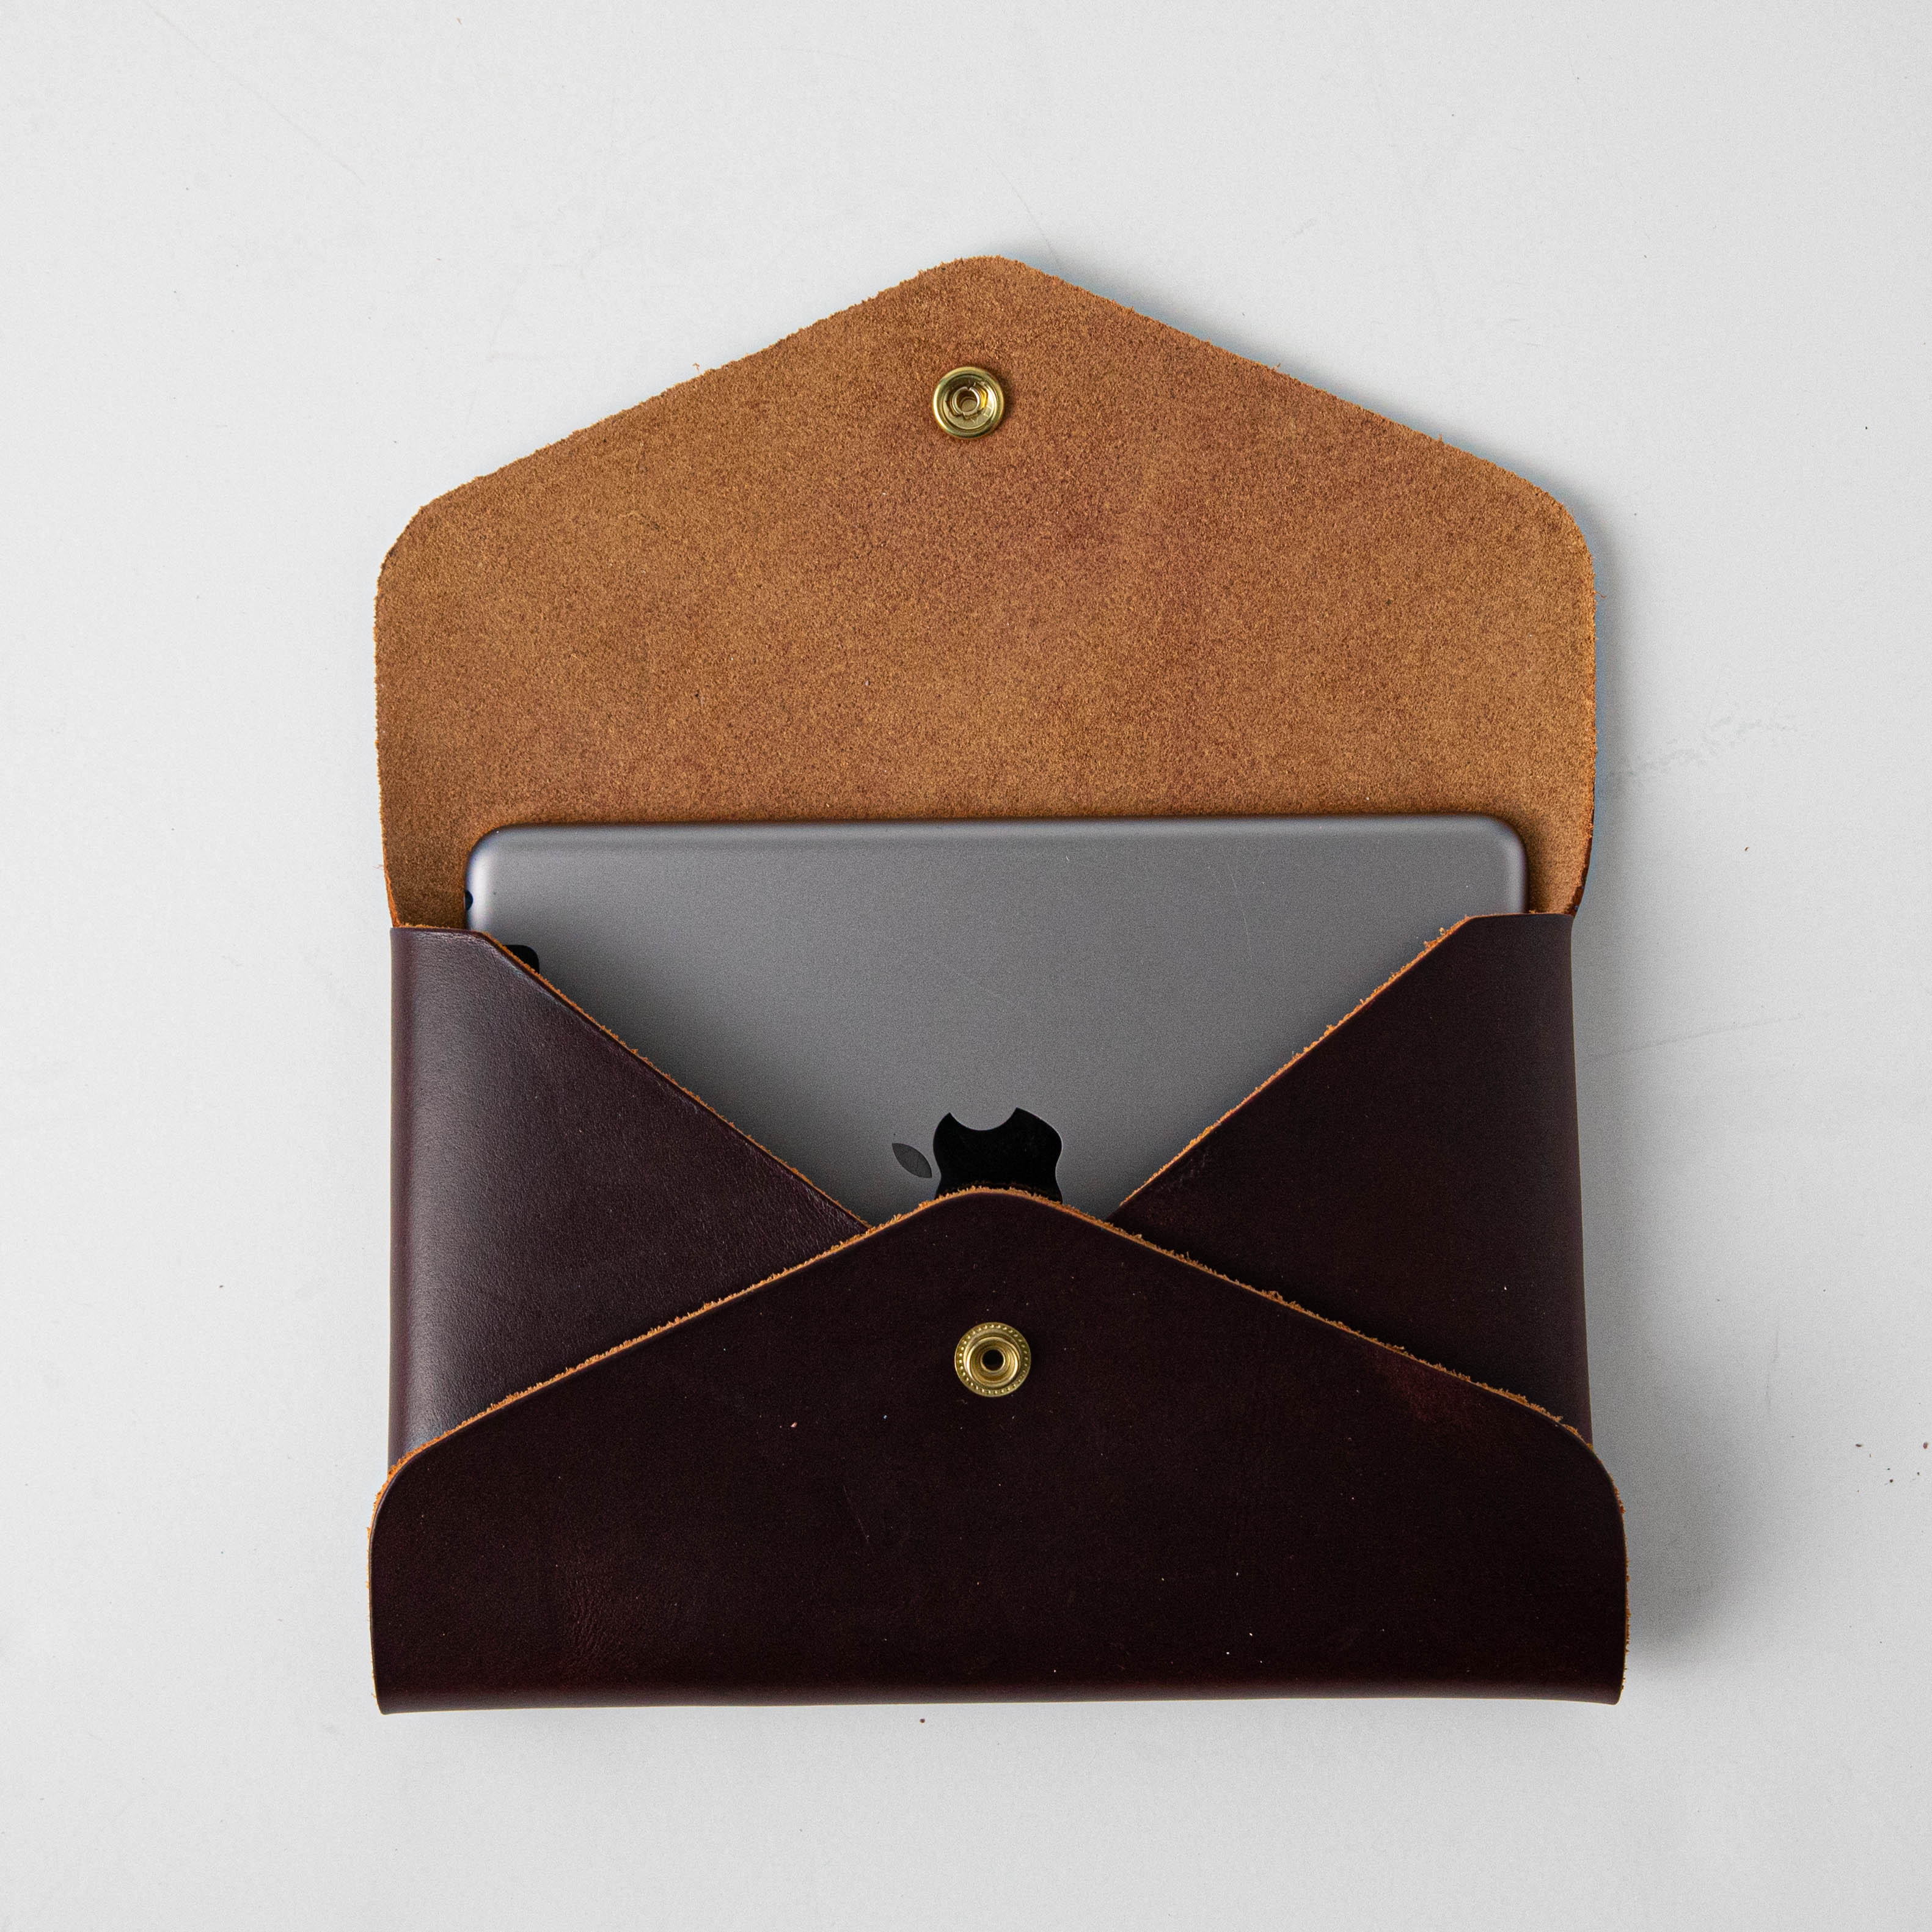 KMM & Co Leather Envelope Clutch